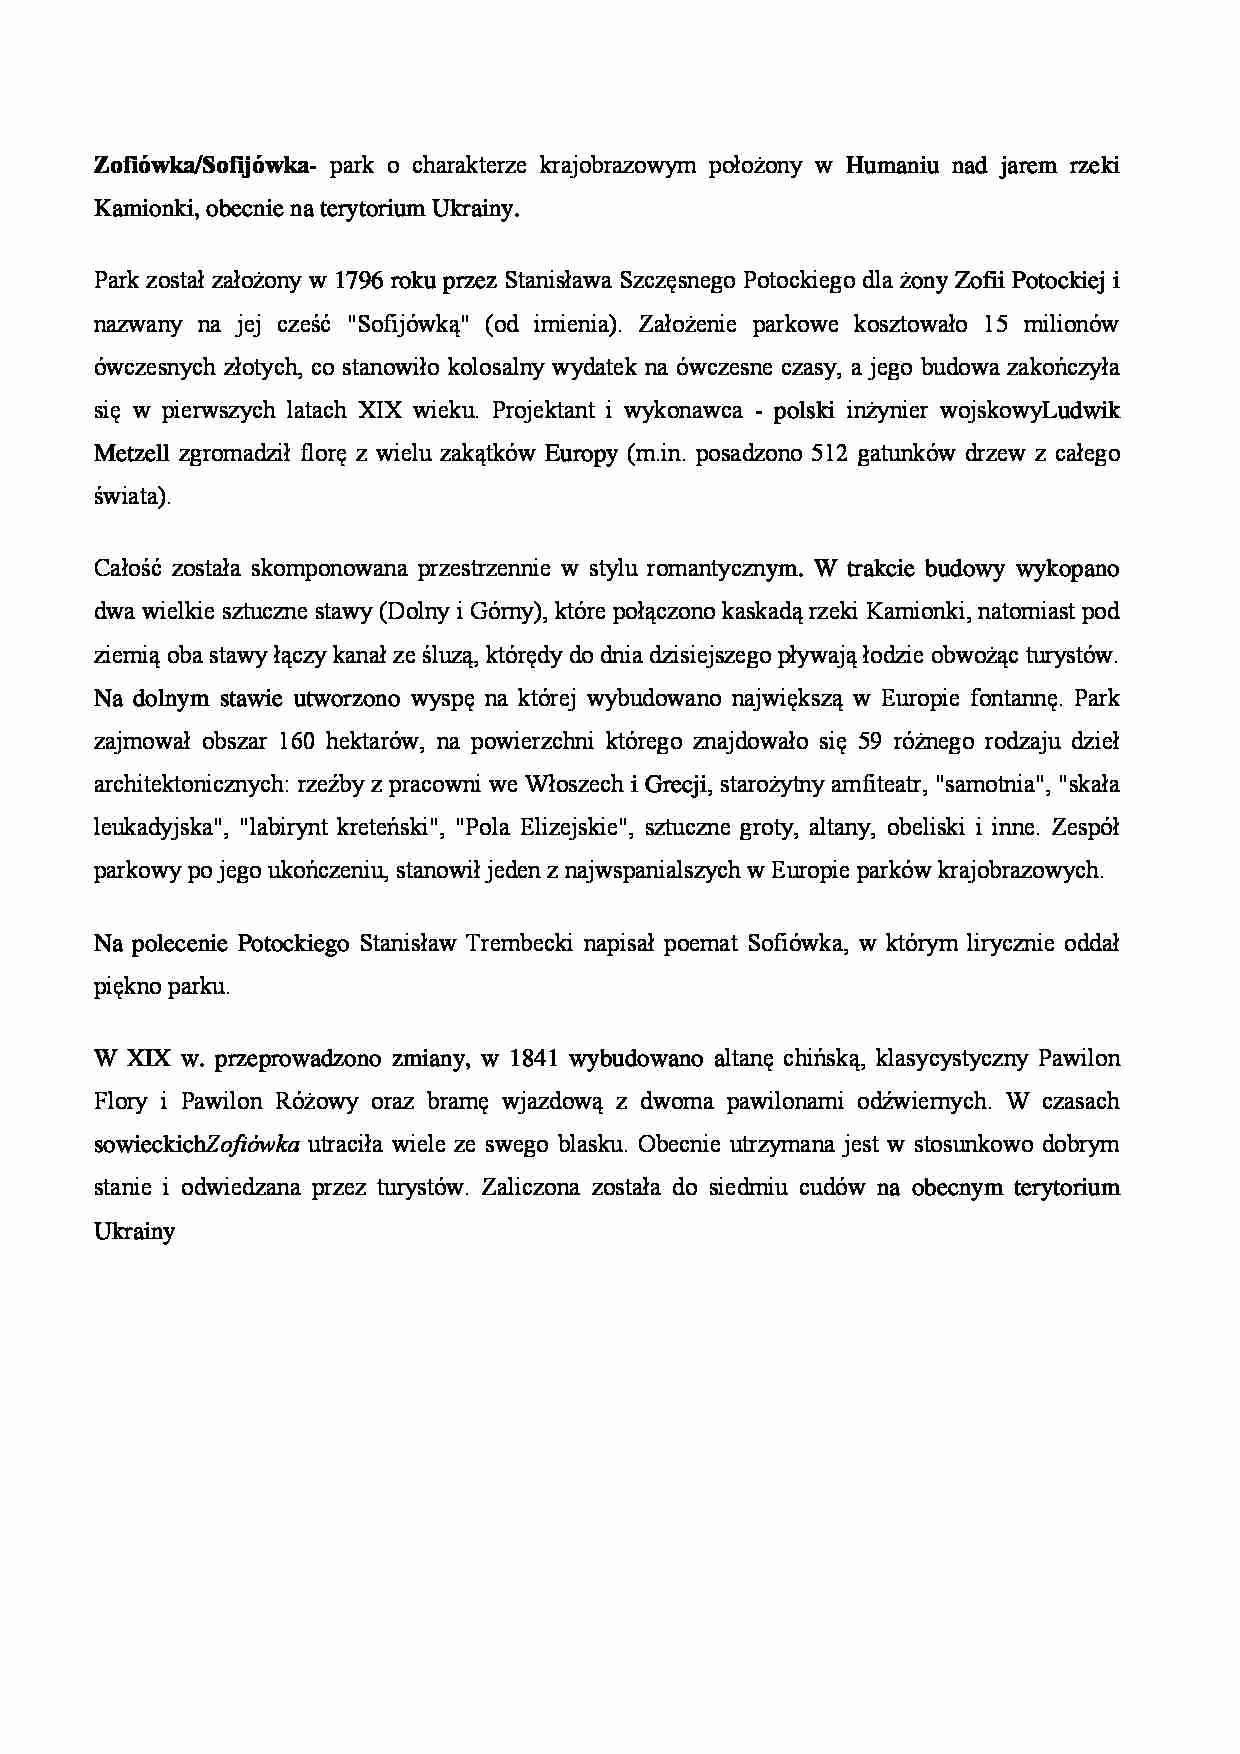 Zofiówka/Sofijówka - opis - strona 1